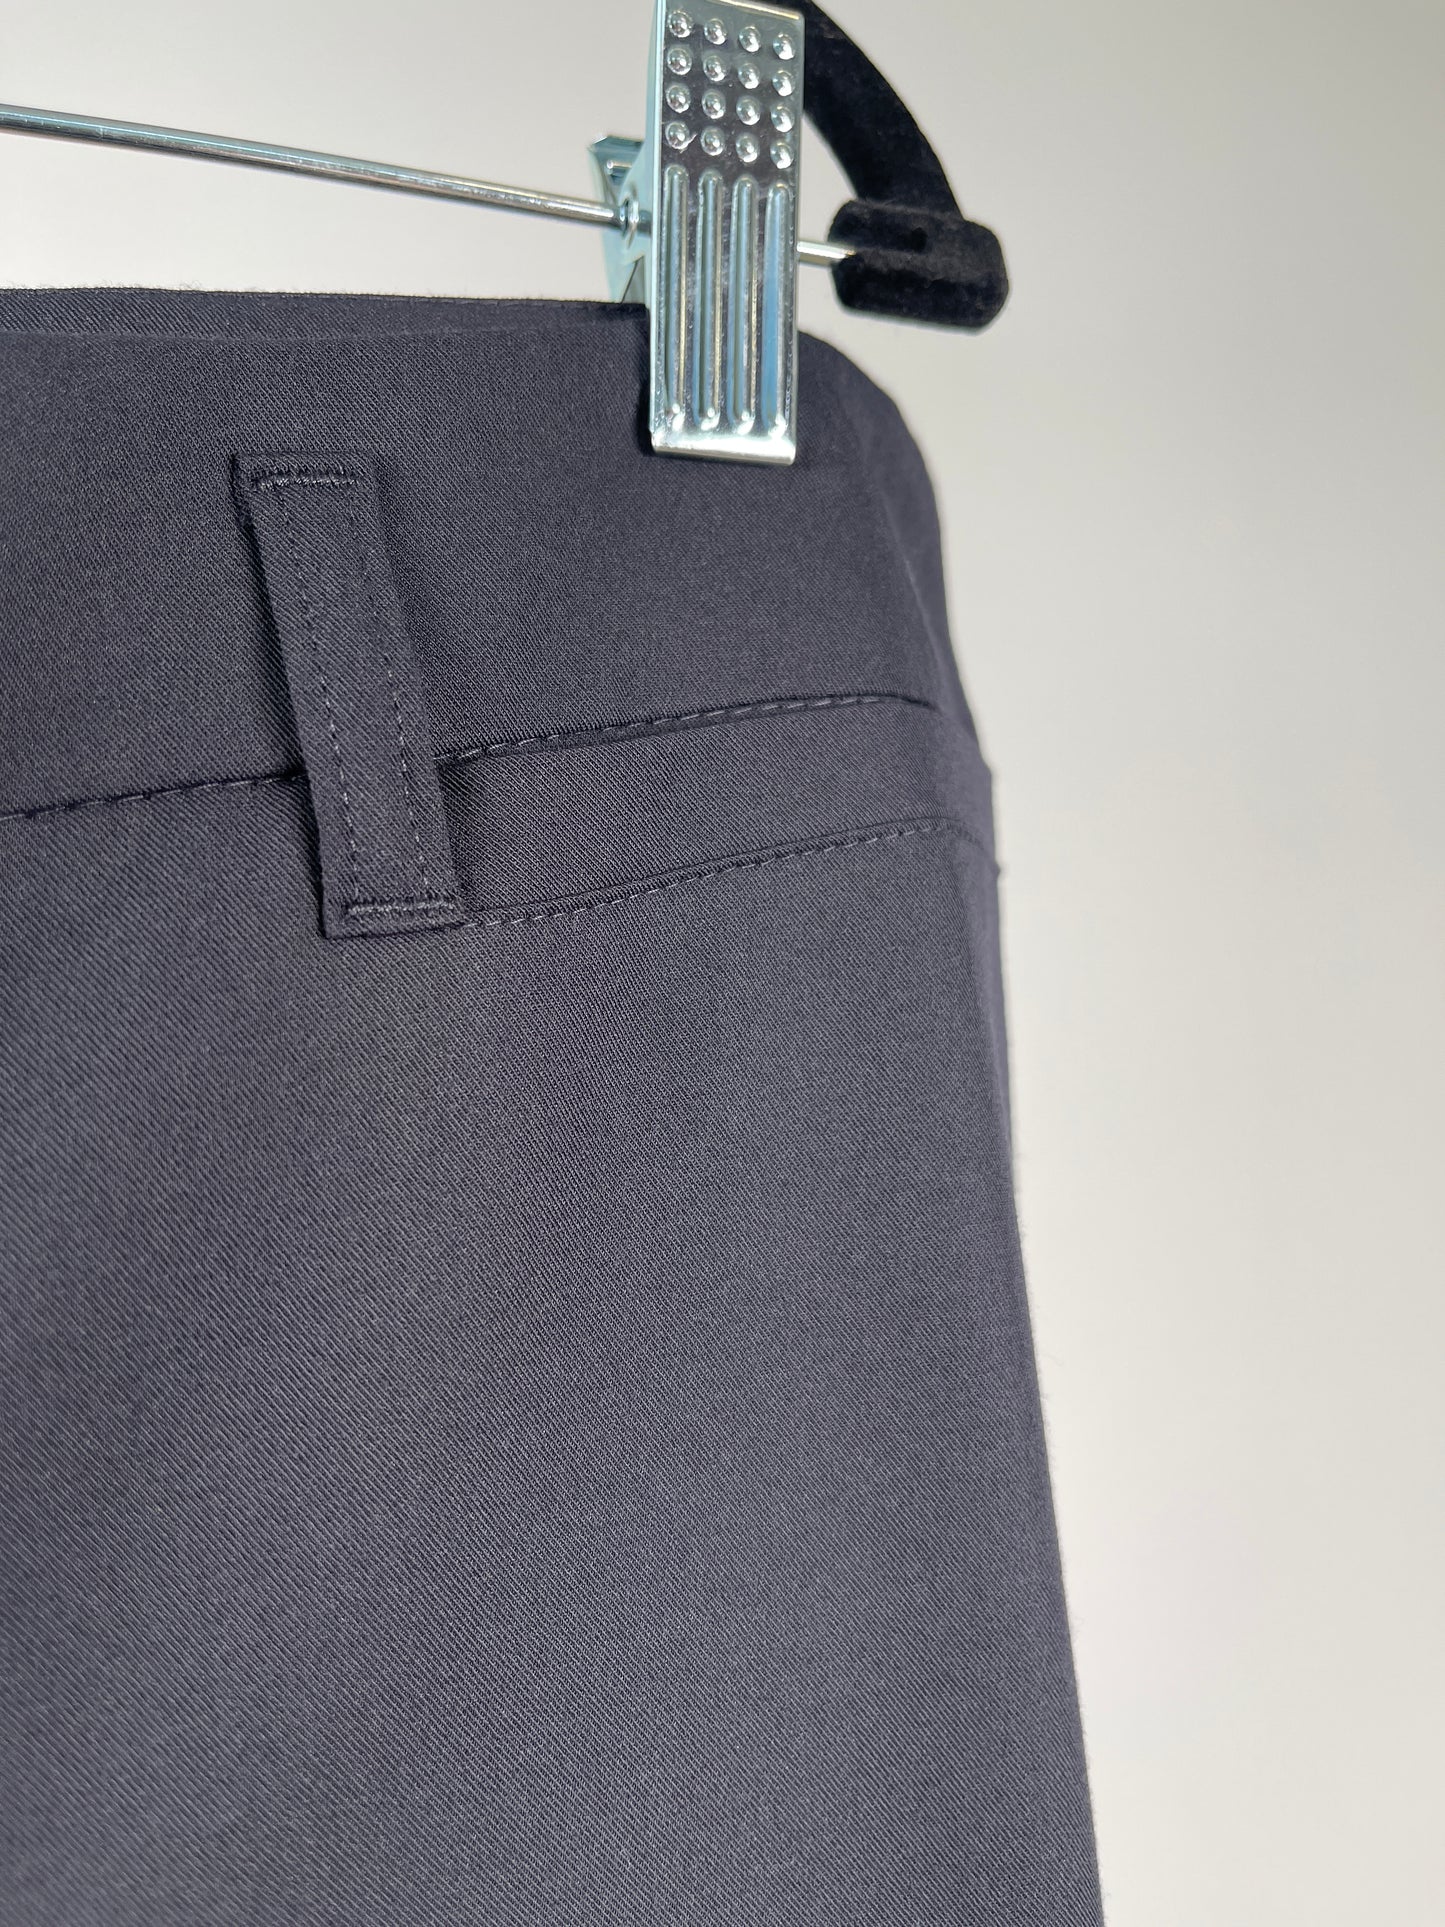 Pantalon marine coupe droite lavable (T+)